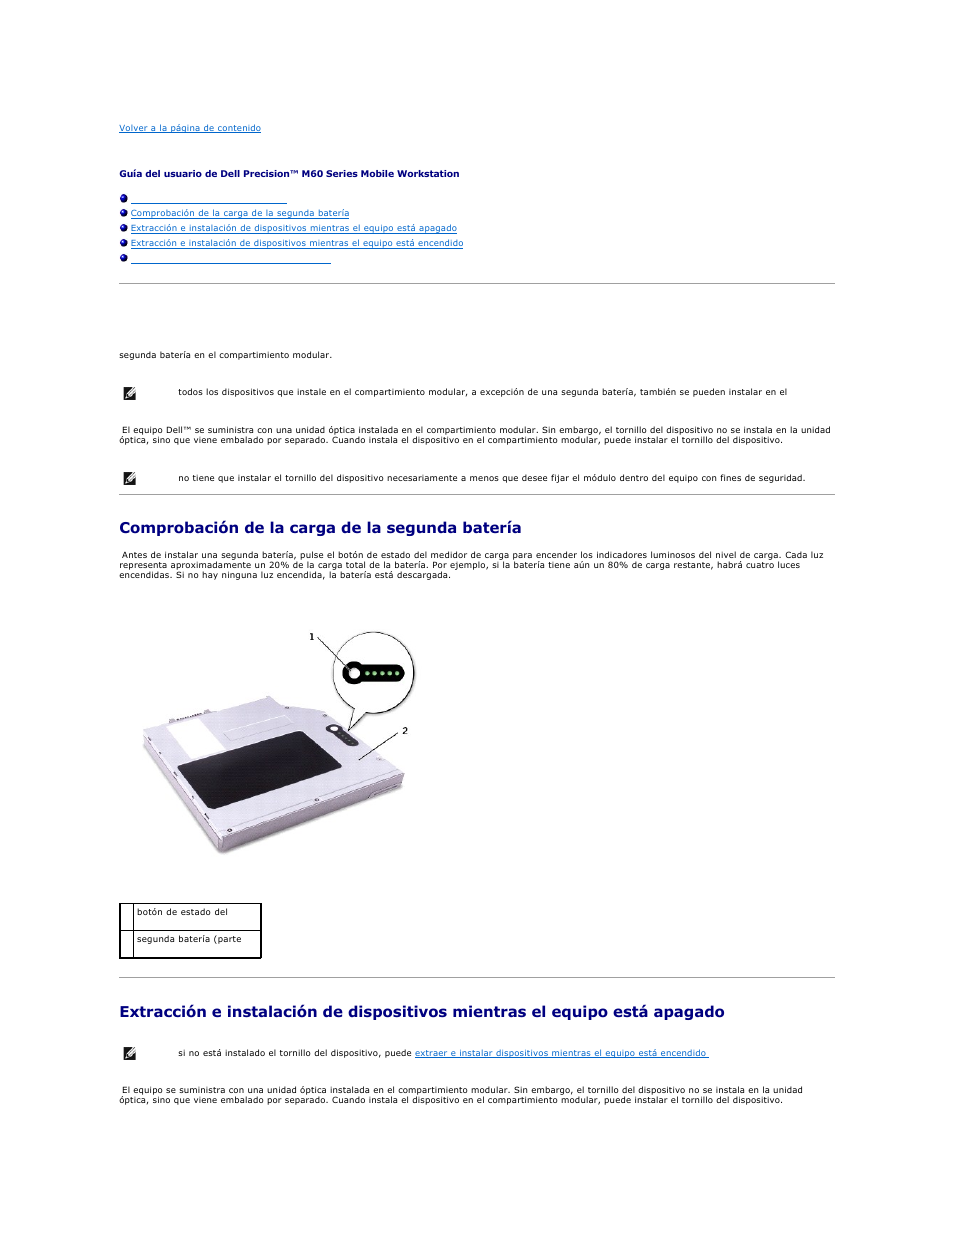 Uso del compartimiento modular, Acerca del compartimiento modular, Comprobación de la carga de la segunda batería | Dell Precision M60 Manual del usuario | Página 21 / 121